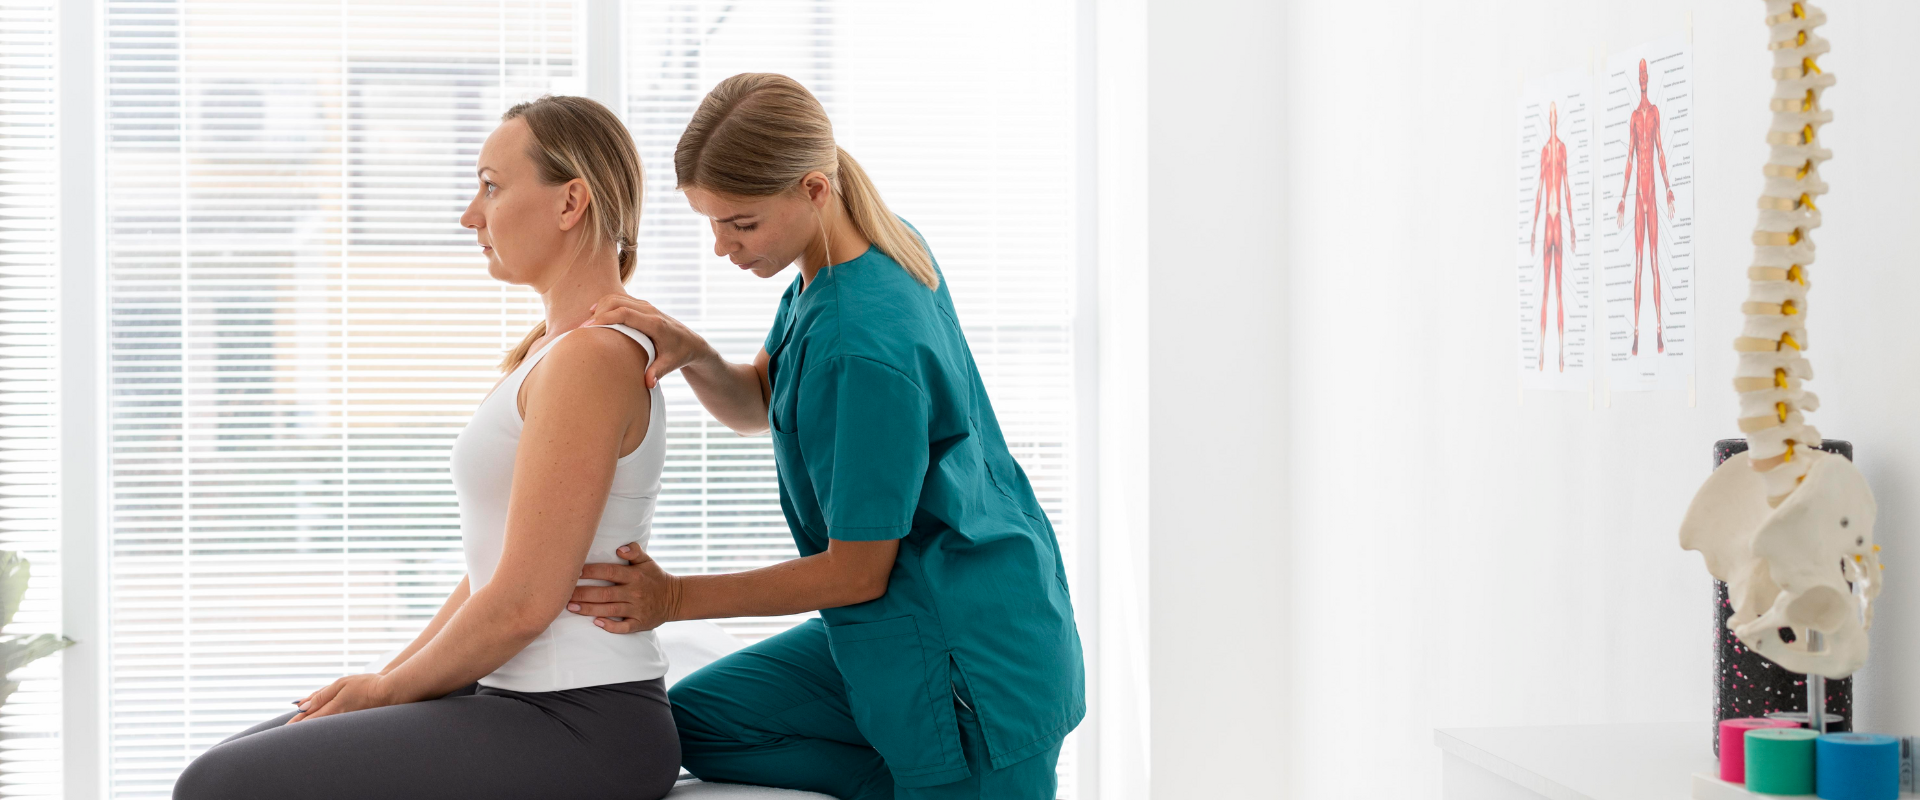 fisioterapeuta em uma consulta com um paciente com problemas nas costas